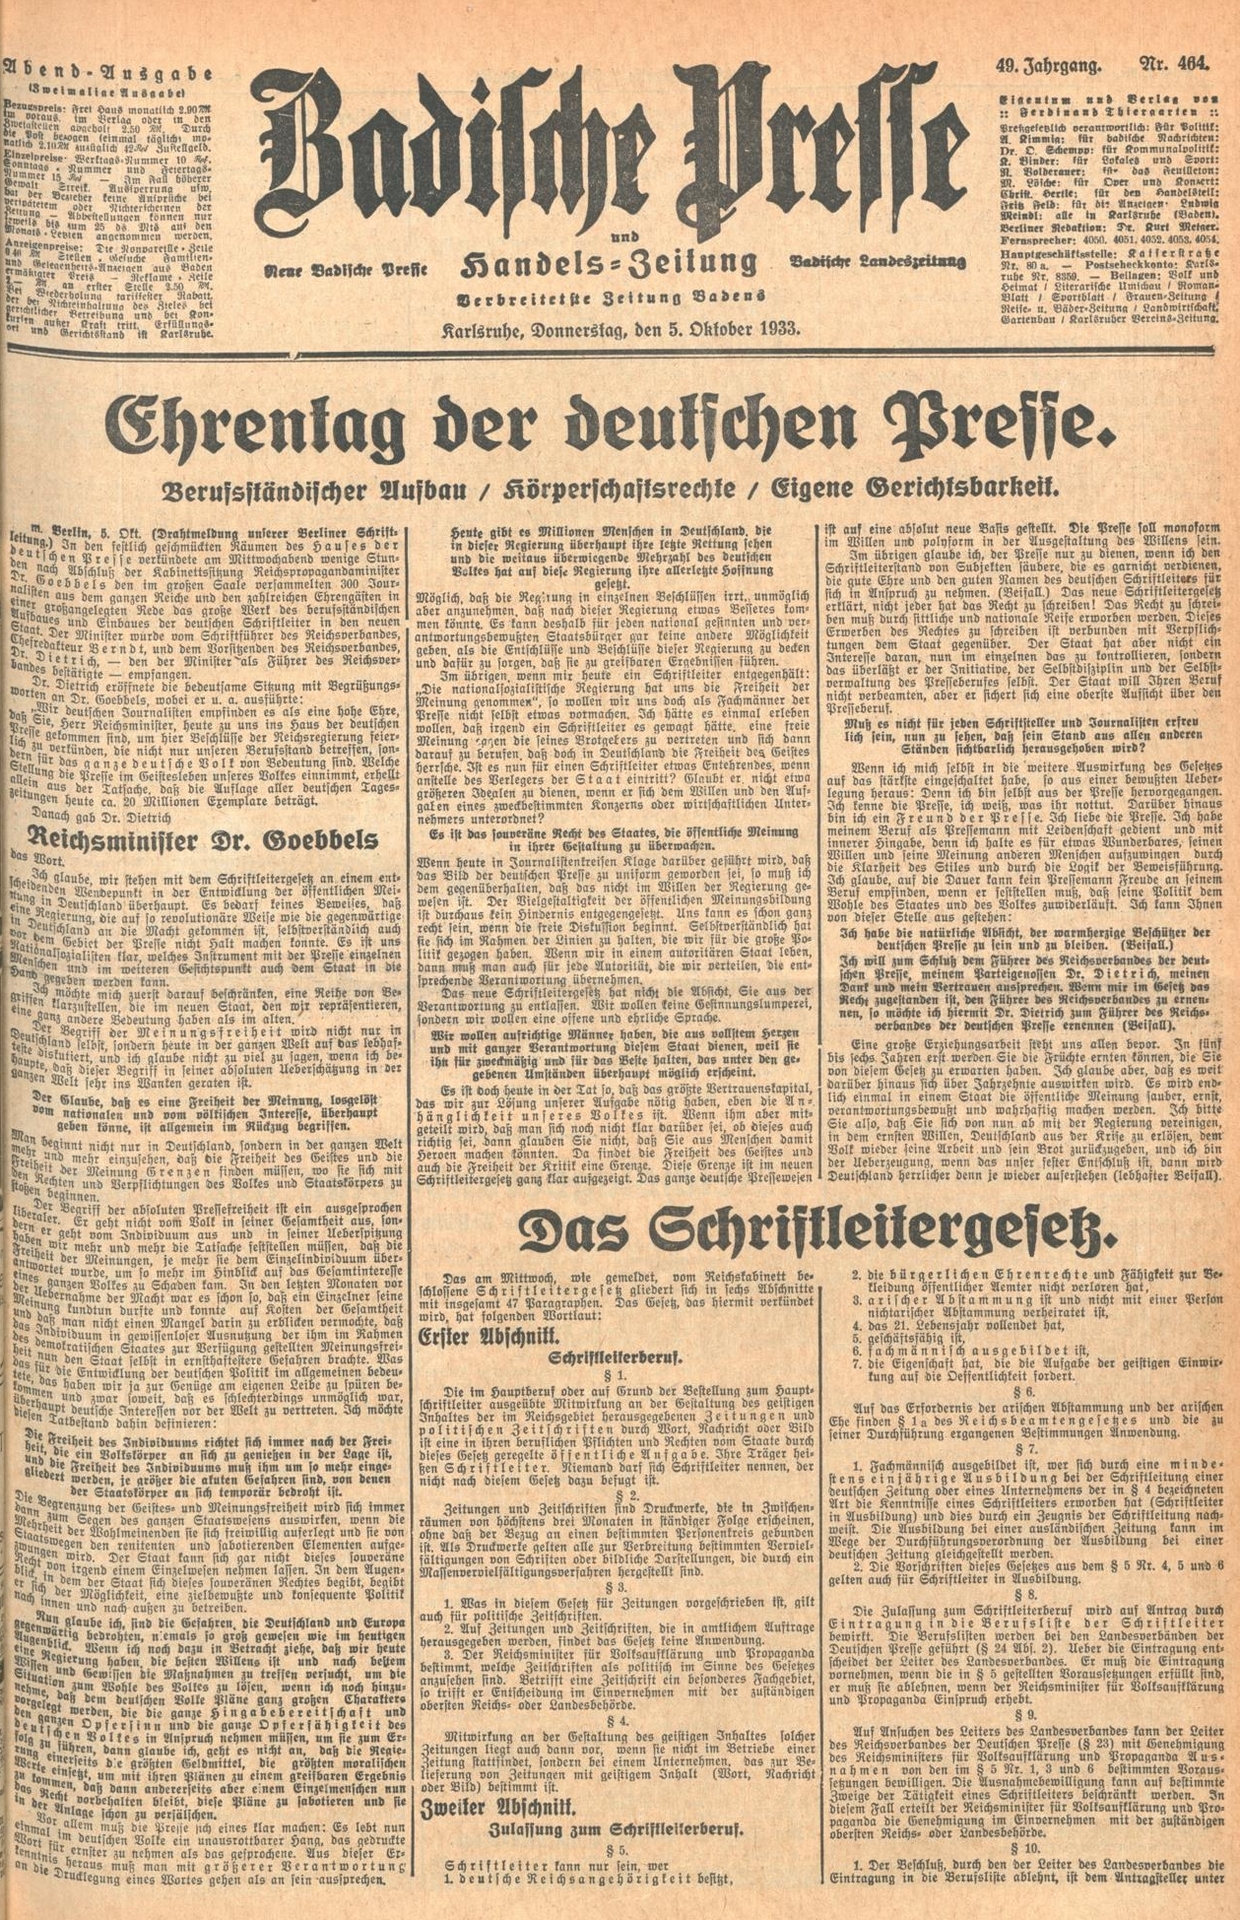 Badische Presse 5.10.1933.jpg